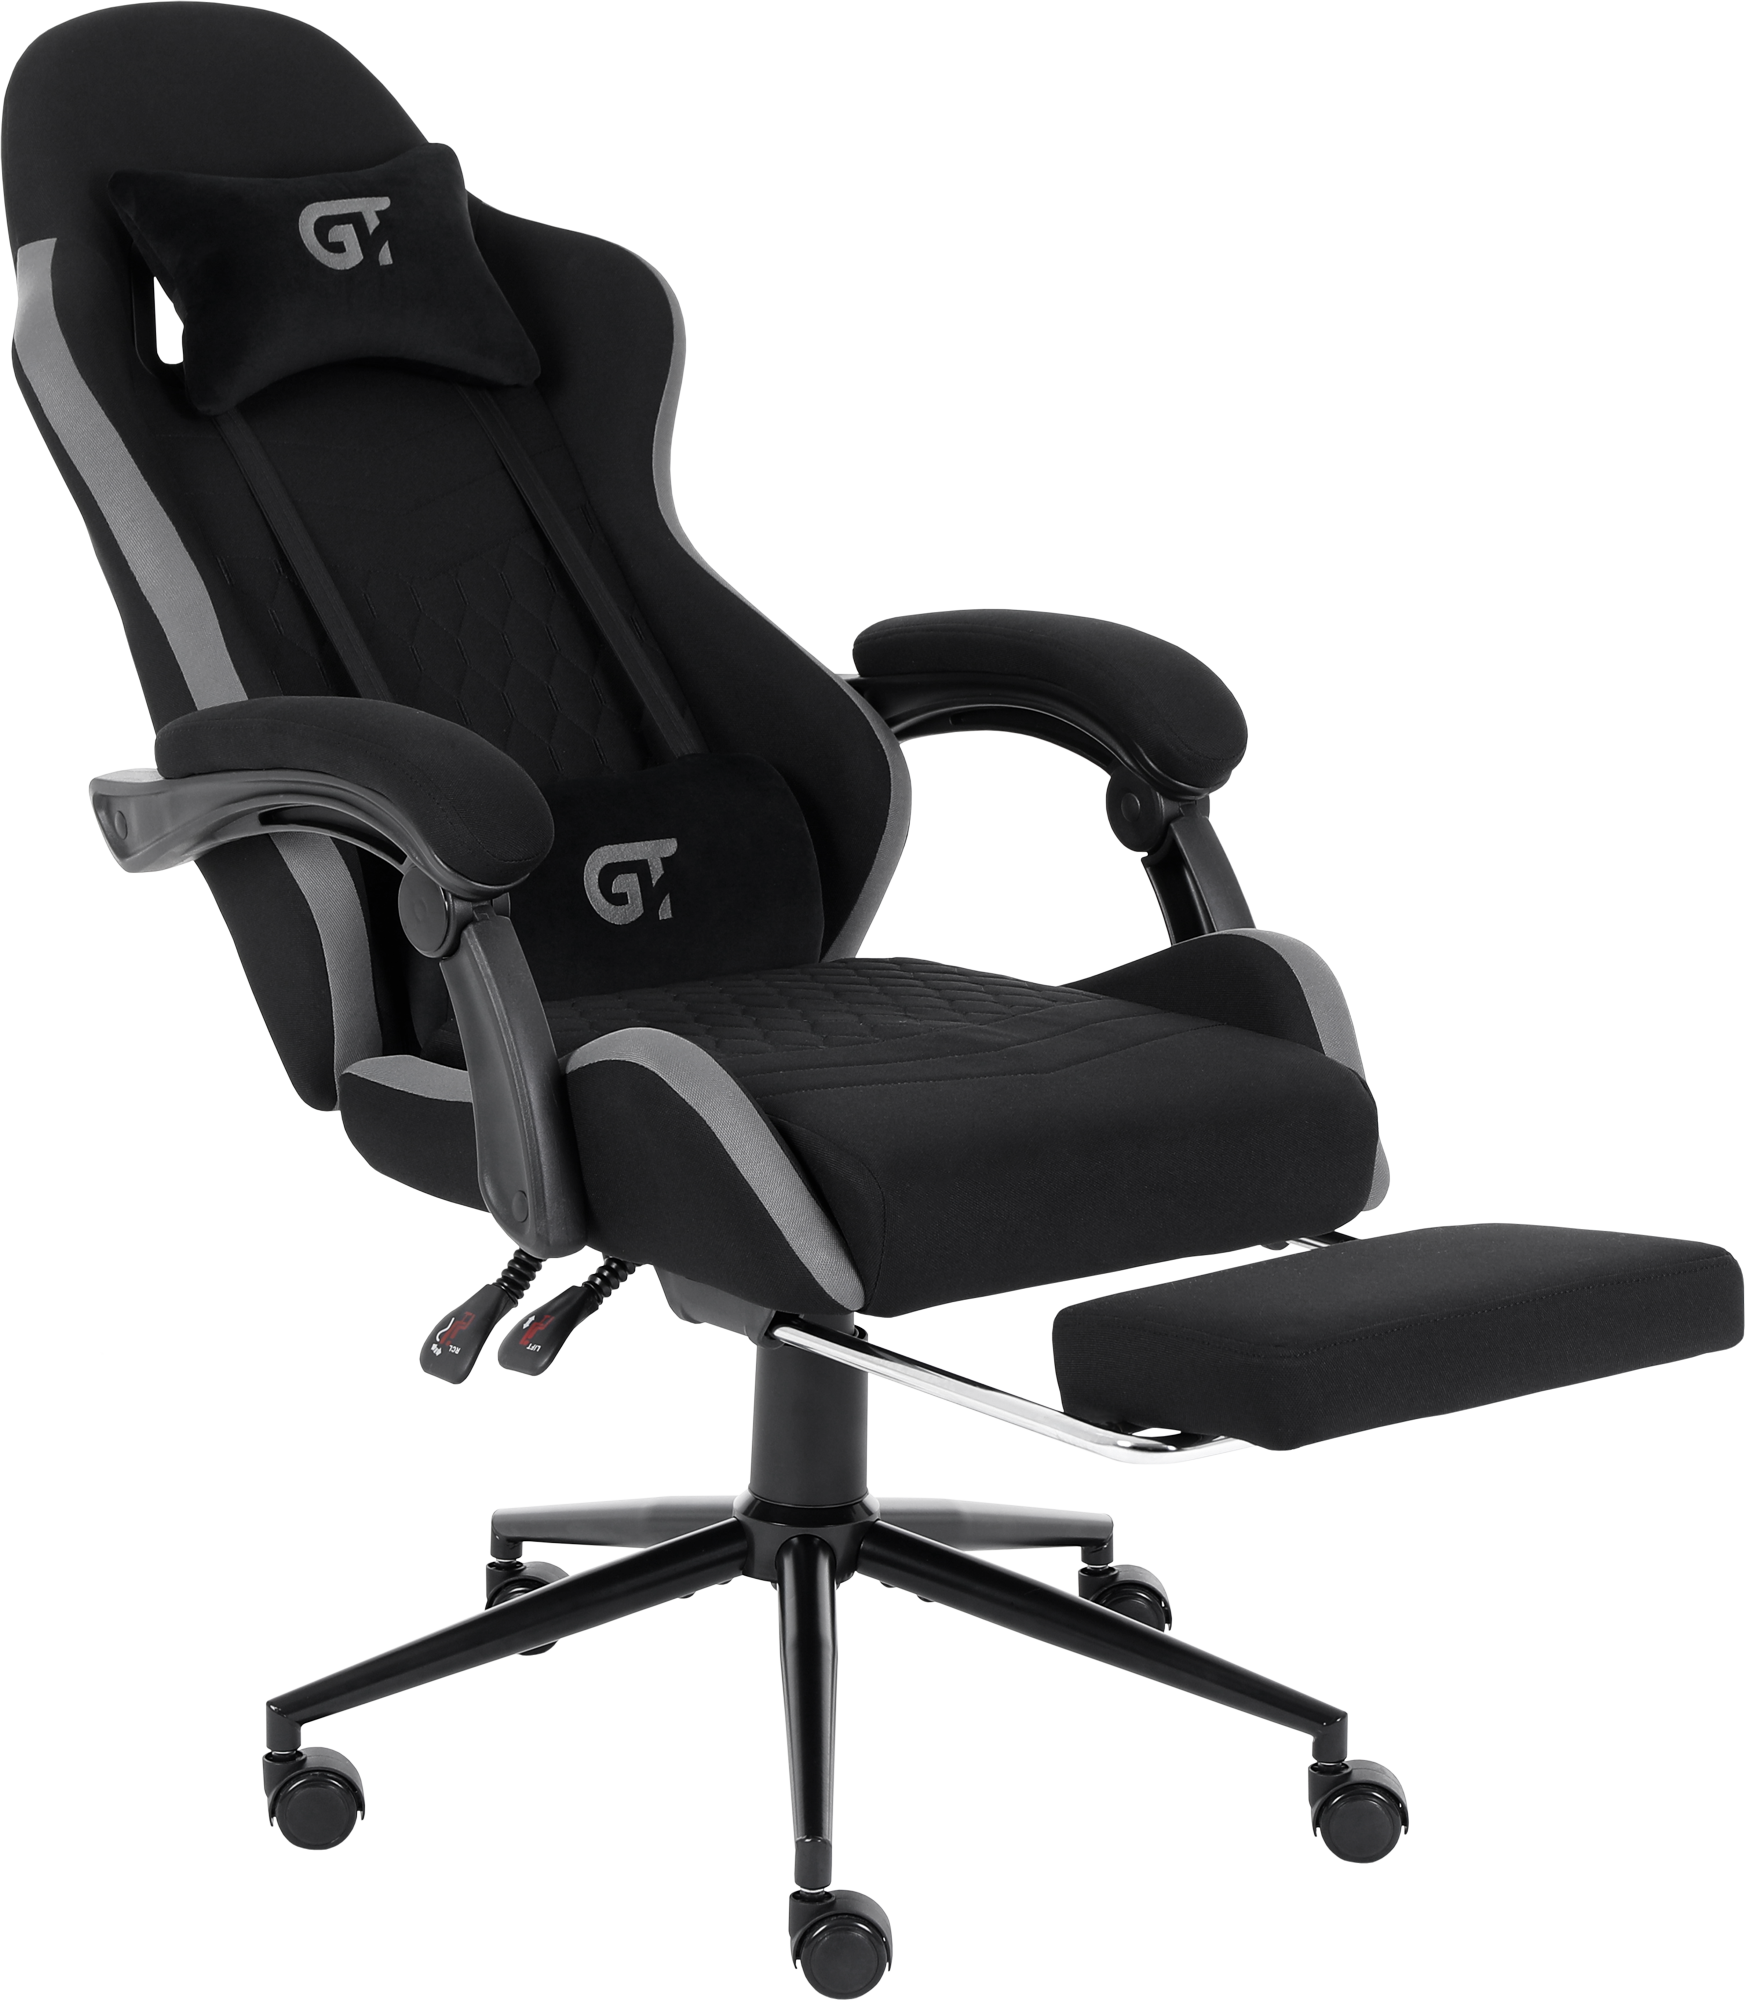 Геймерское кресло GT Racer черное с серым (X-2324 Fabric Black/Gray) - фото 5